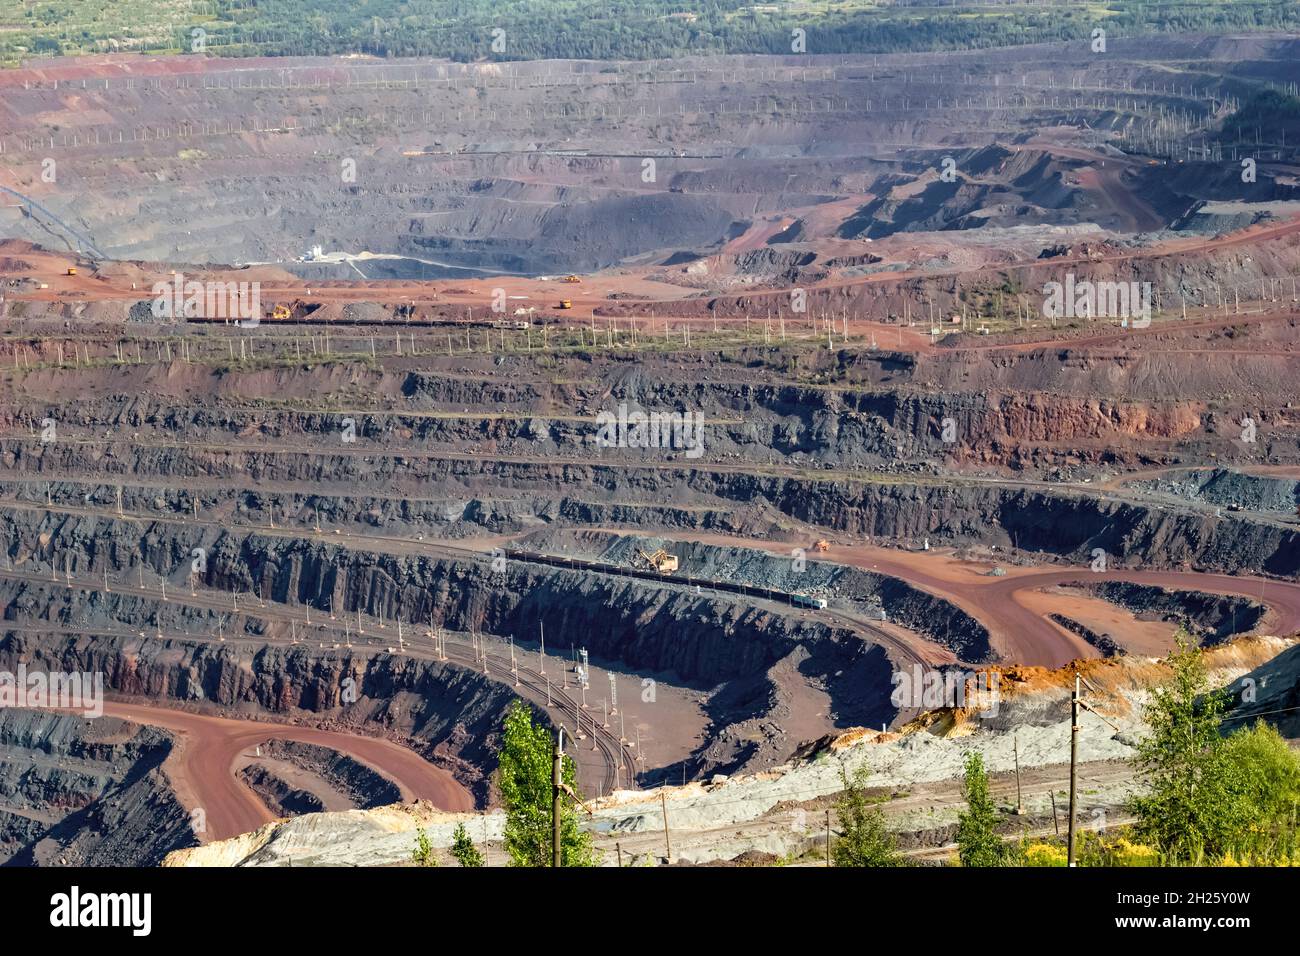 Panorama eines Industriebergwerks zur Gewinnung natürlicher Ressourcen, Draufsicht. Stockfoto